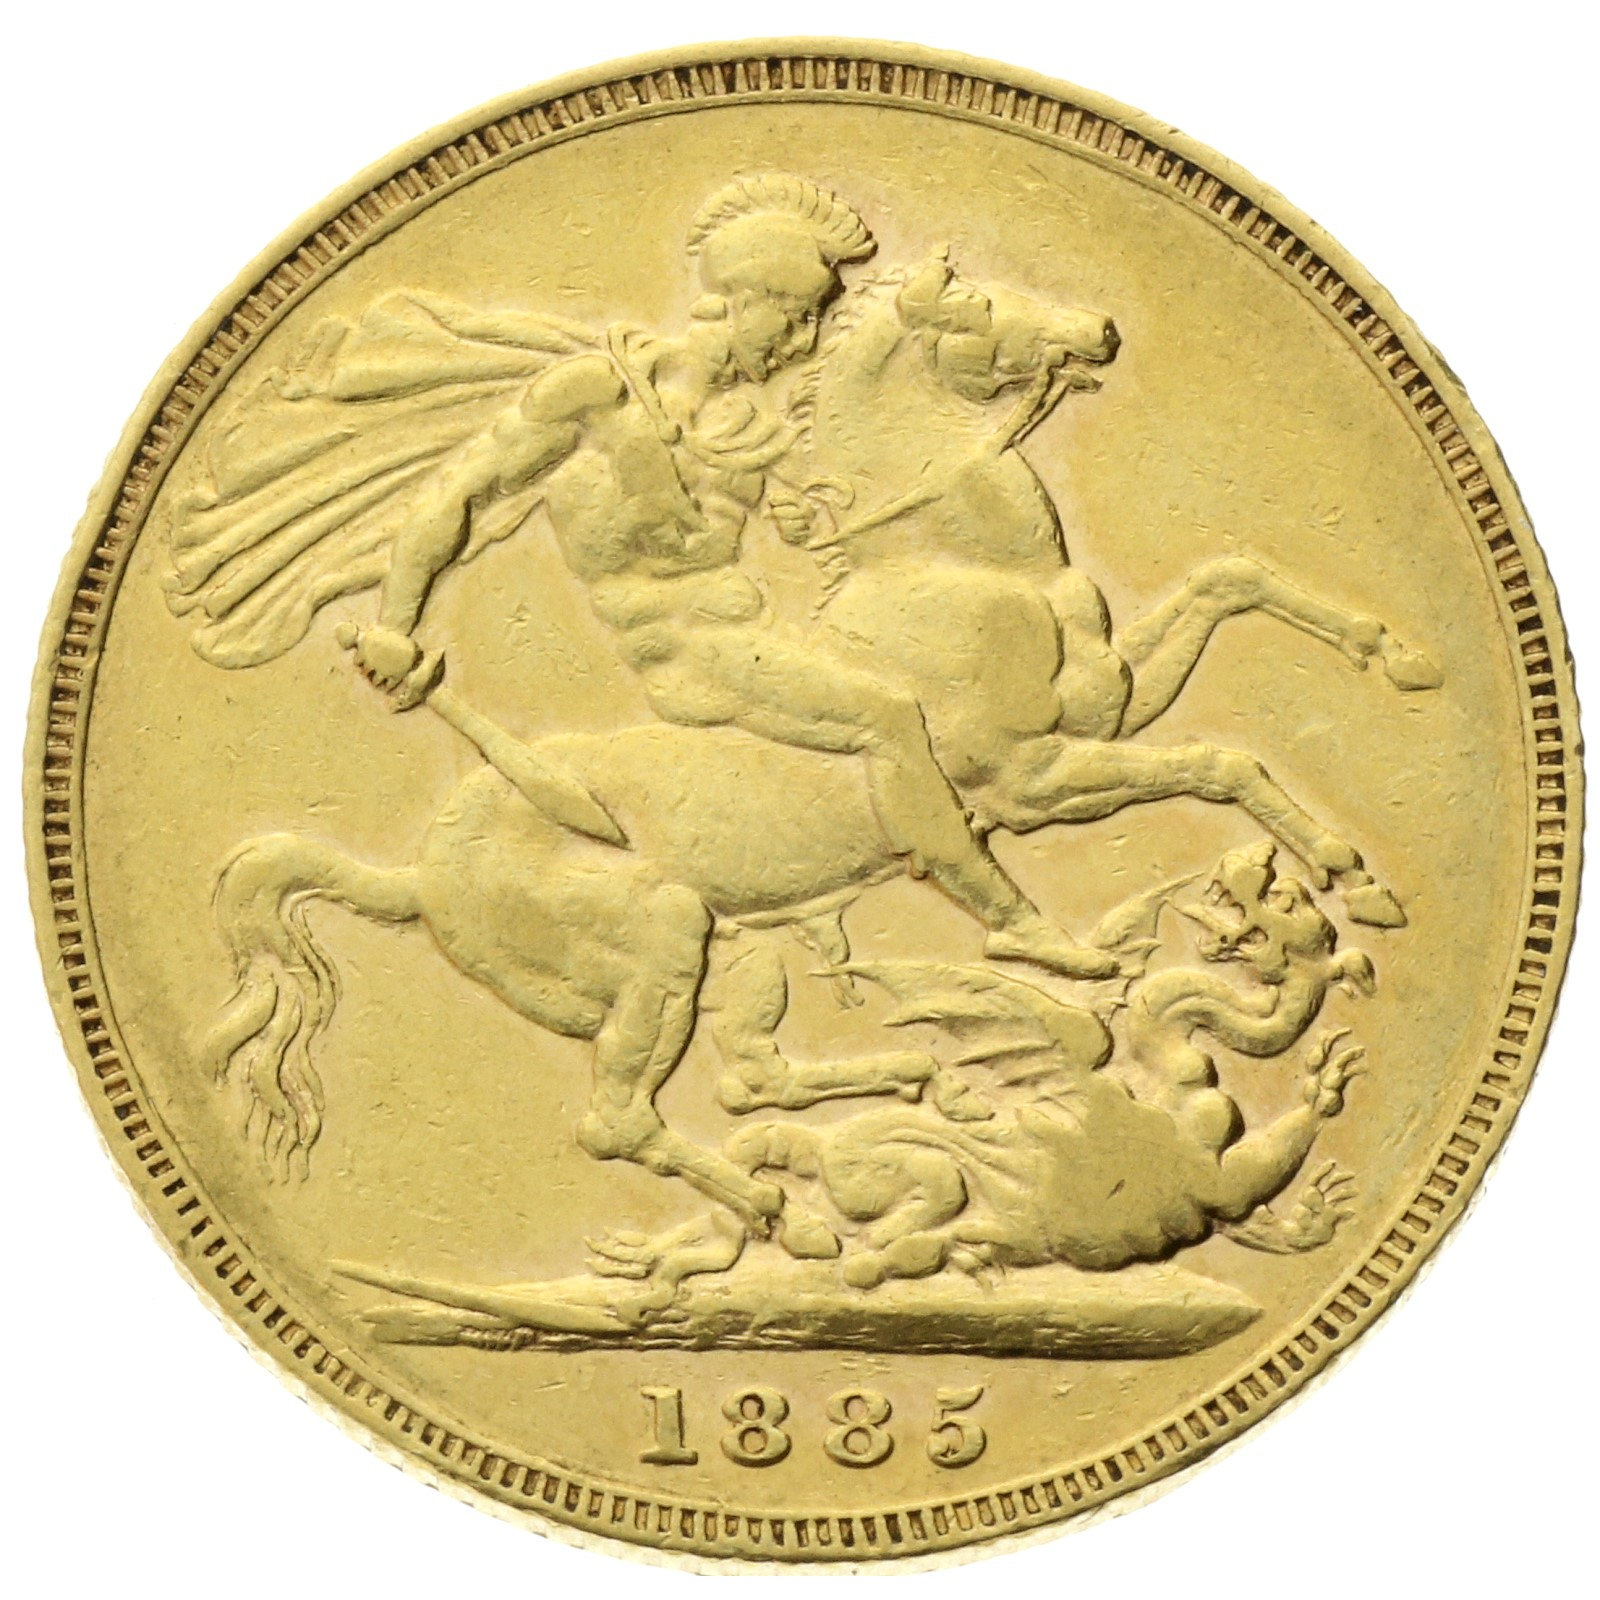 Australia - Victoria - 1 sovereign - 1885